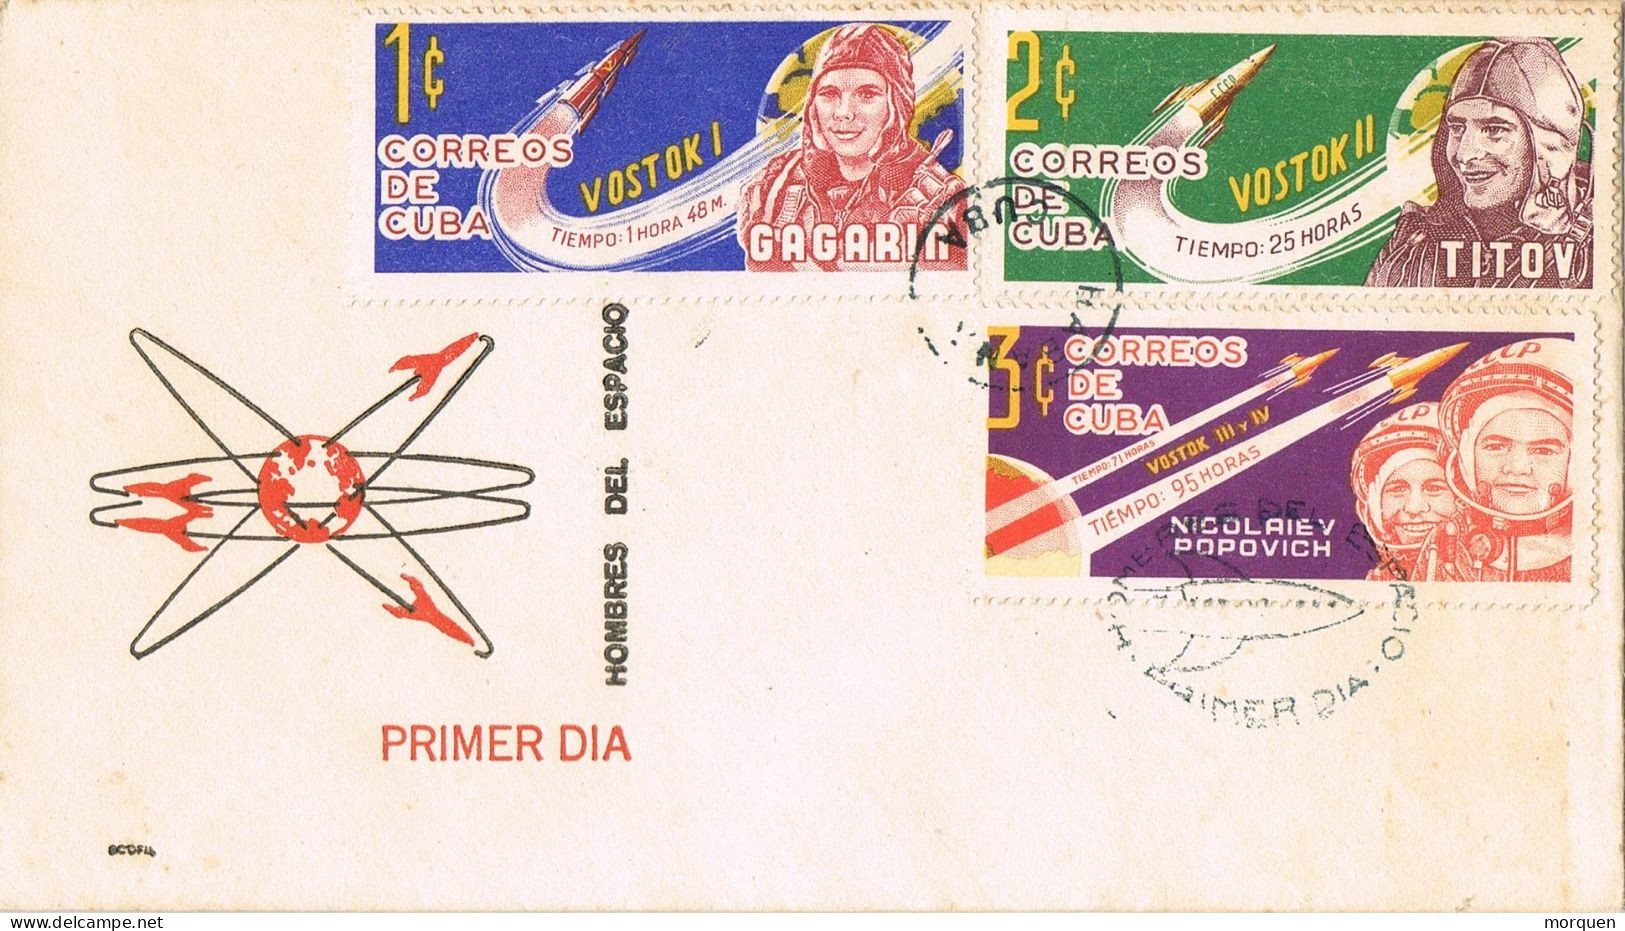 53326. Carta F.D.C. LA HABANA (Cuba) 1970. SPACE, Heroes Del Espacio, Astronautas Rusos VOSTOK I-II-III-IV - FDC